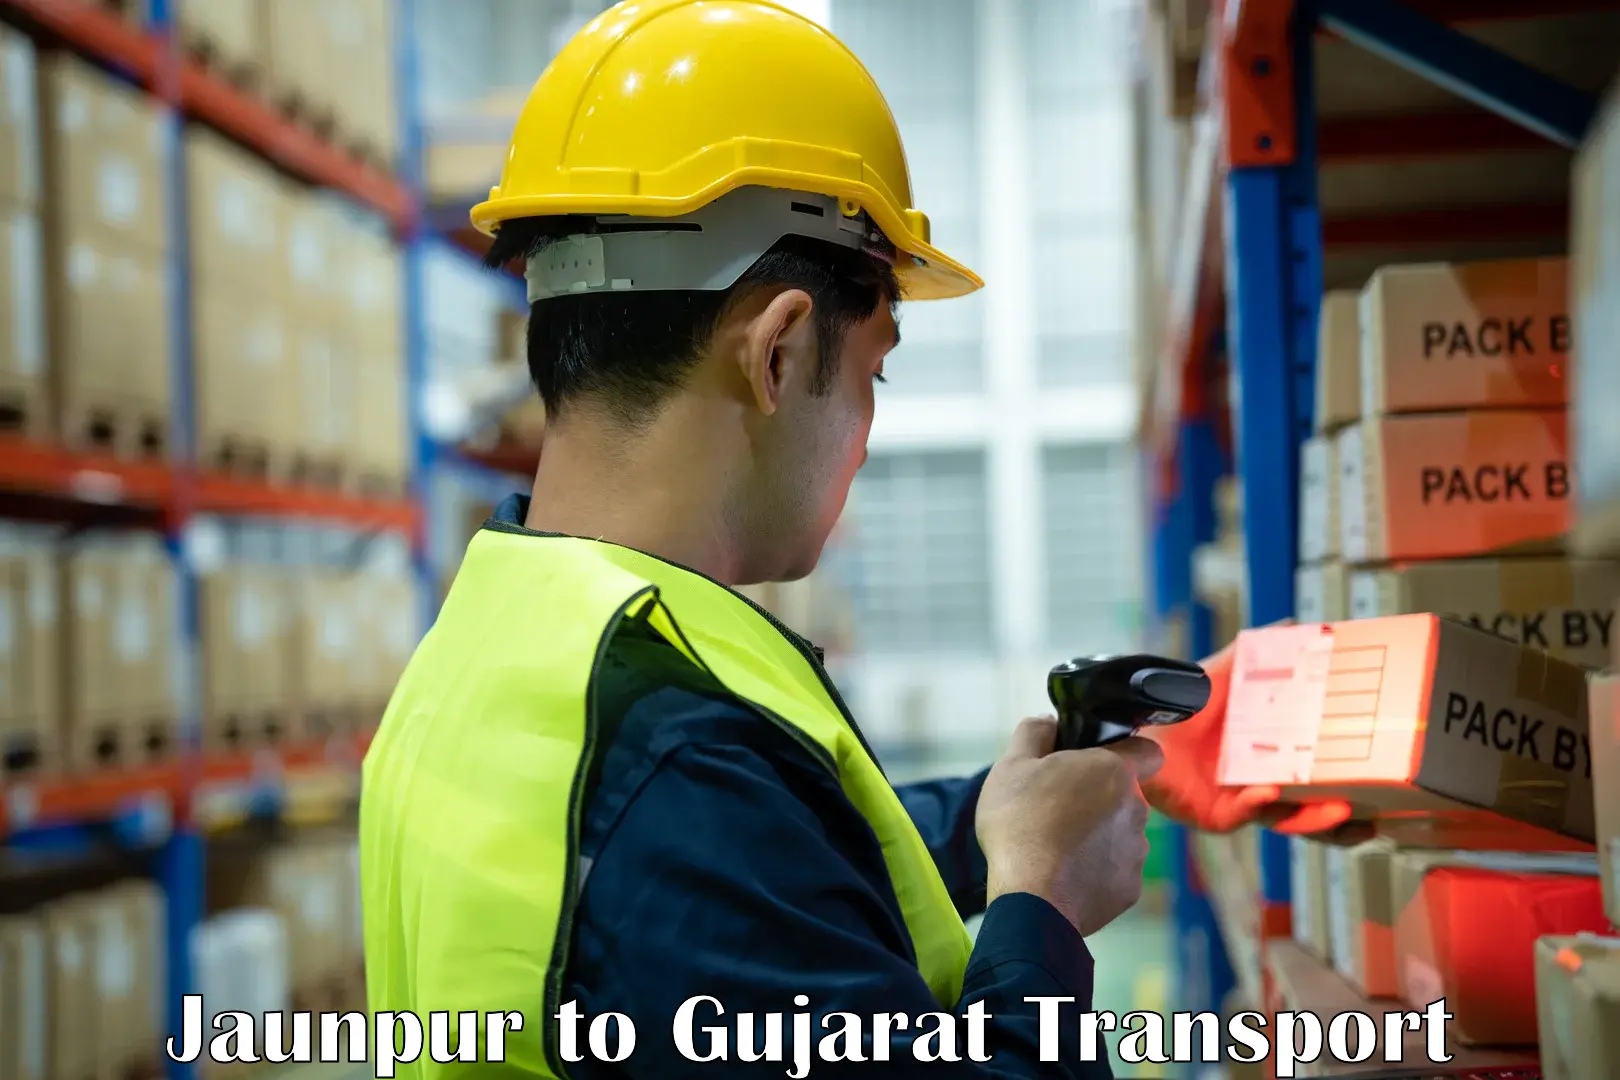 Goods delivery service Jaunpur to Rapar